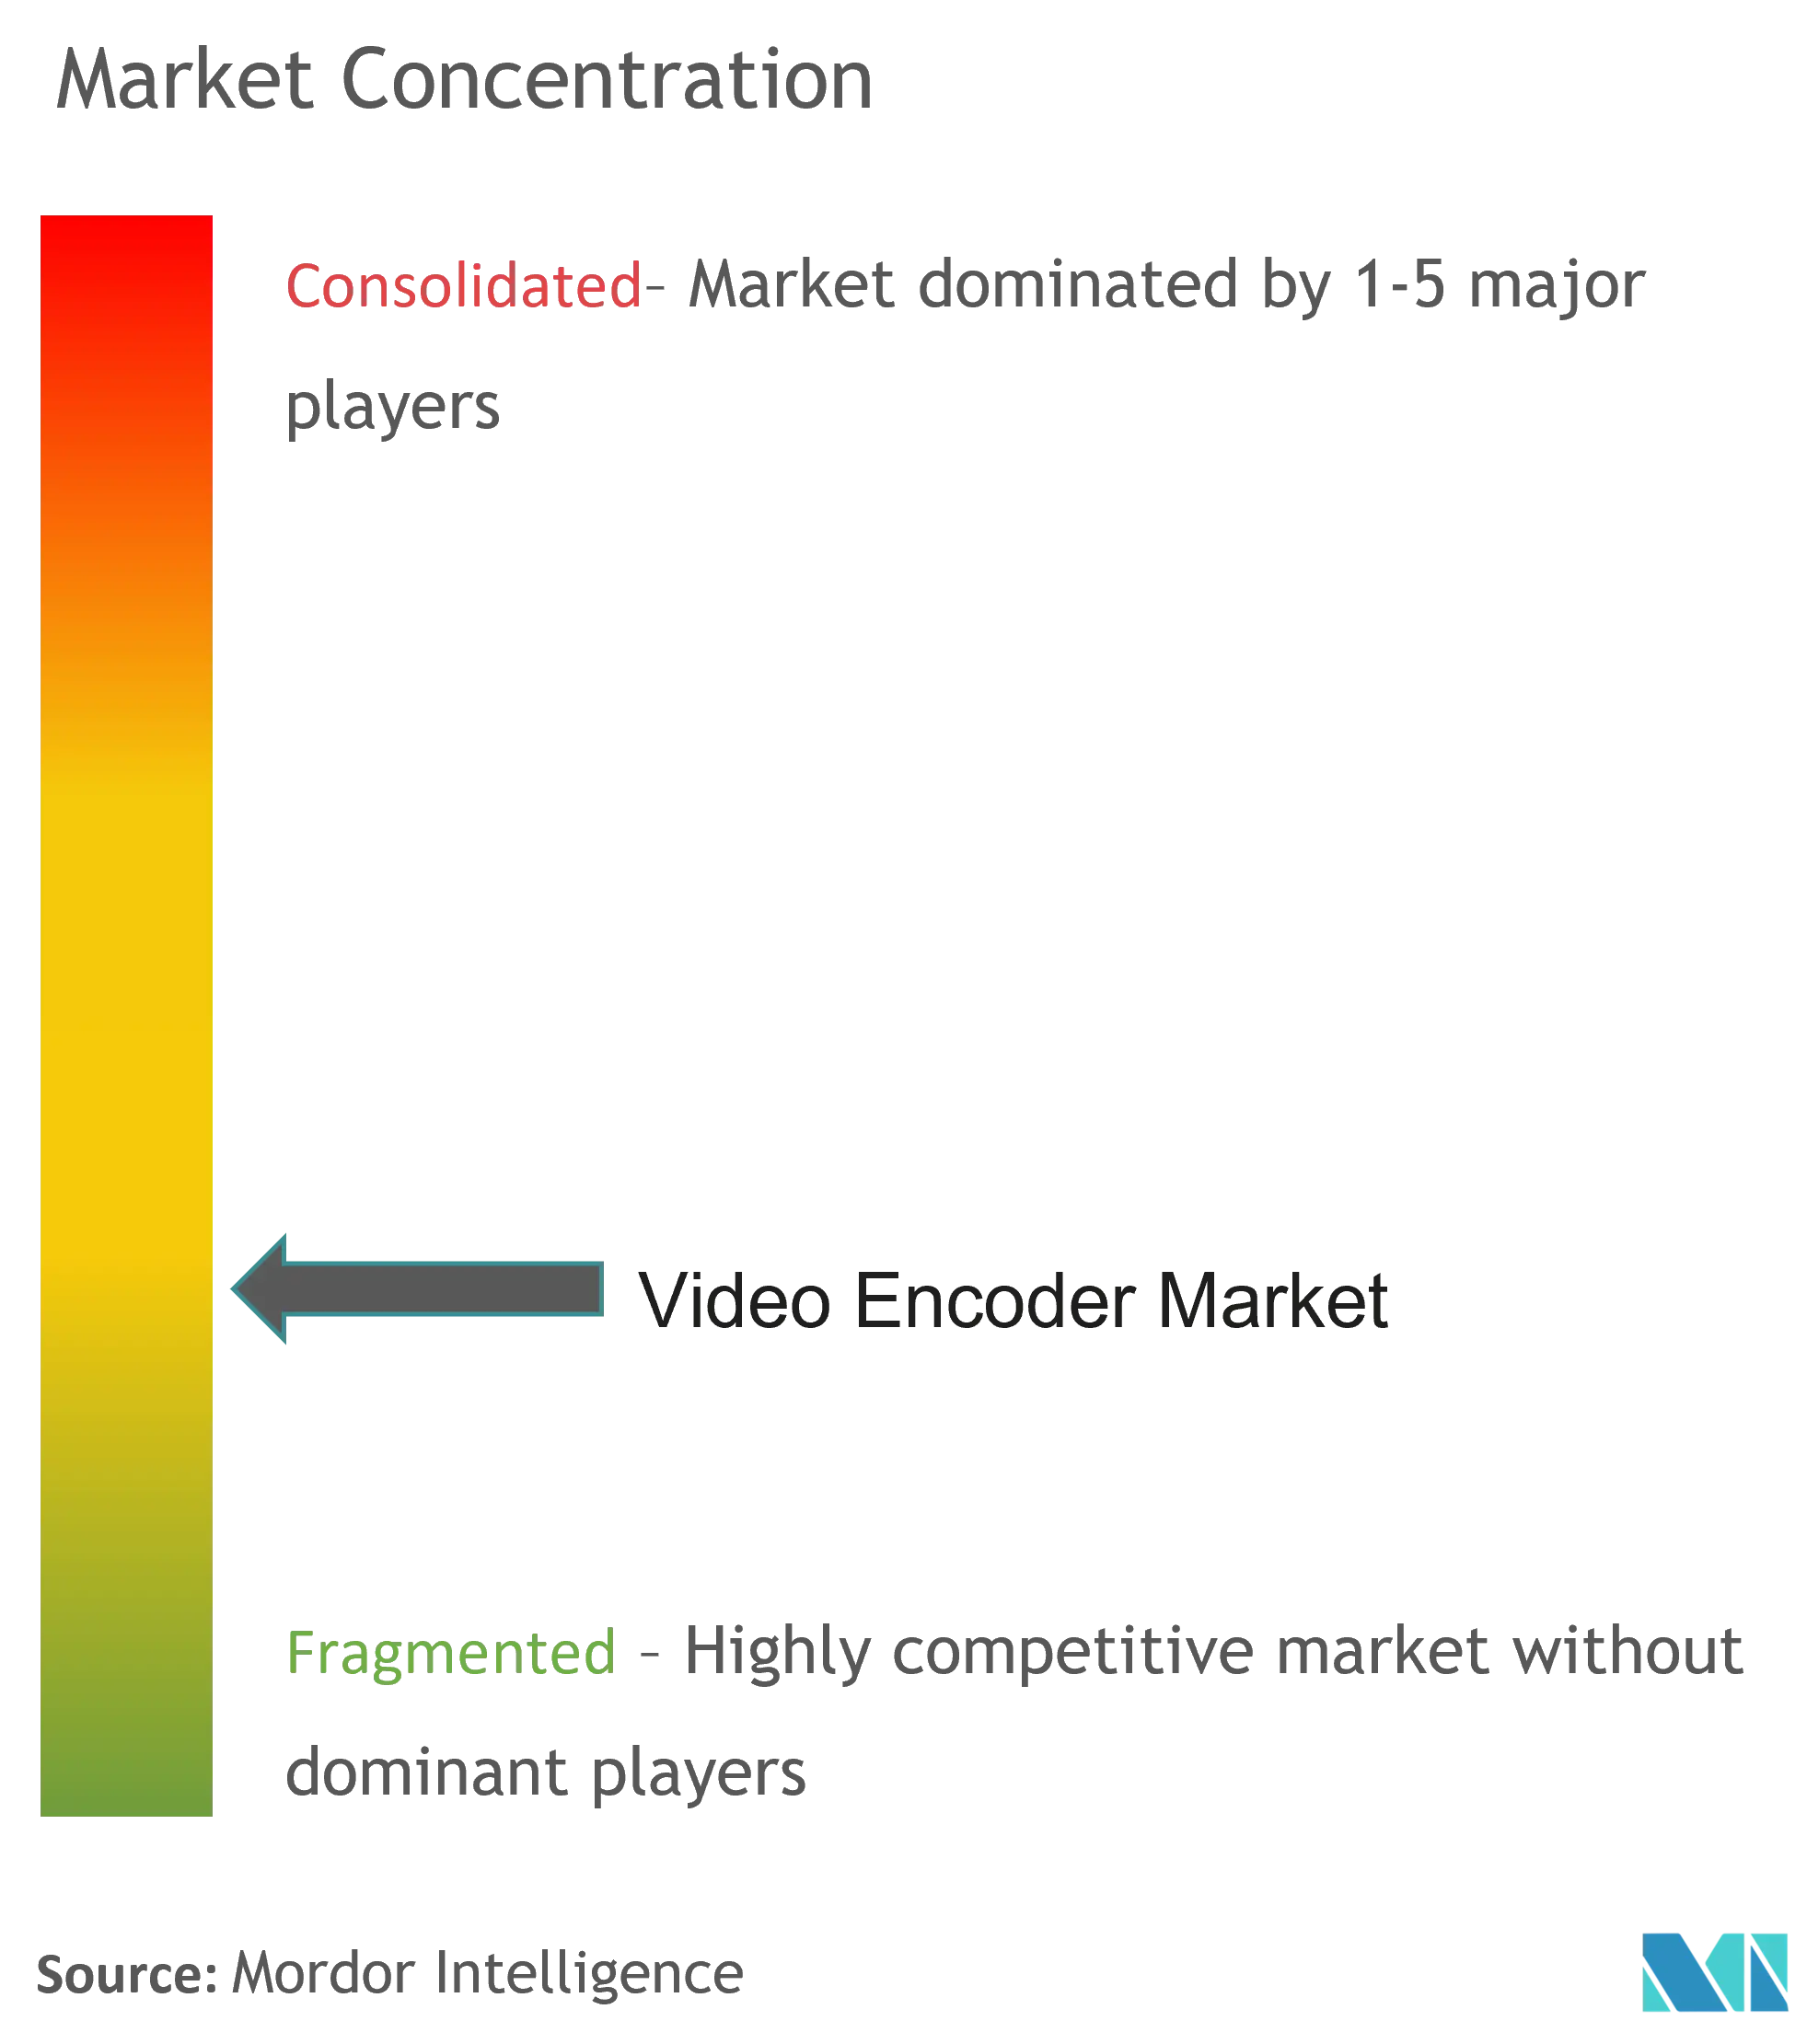 Video Encoder Market - Market Concentration.png